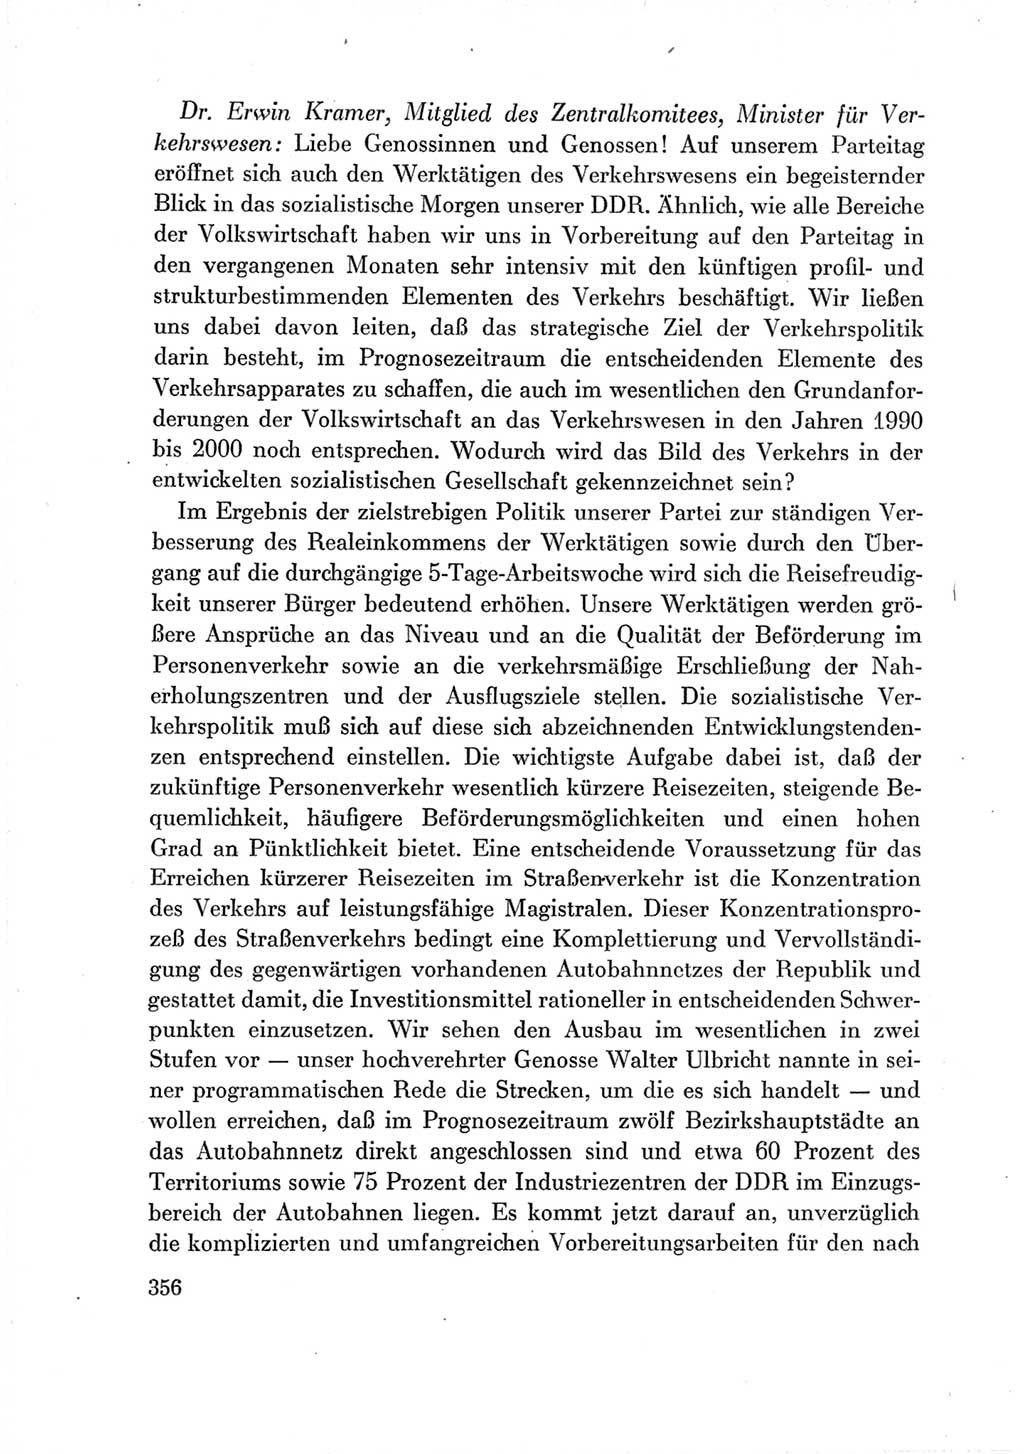 Protokoll der Verhandlungen des Ⅶ. Parteitages der Sozialistischen Einheitspartei Deutschlands (SED) [Deutsche Demokratische Republik (DDR)] 1967, Band Ⅲ, Seite 356 (Prot. Verh. Ⅶ. PT SED DDR 1967, Bd. Ⅲ, S. 356)